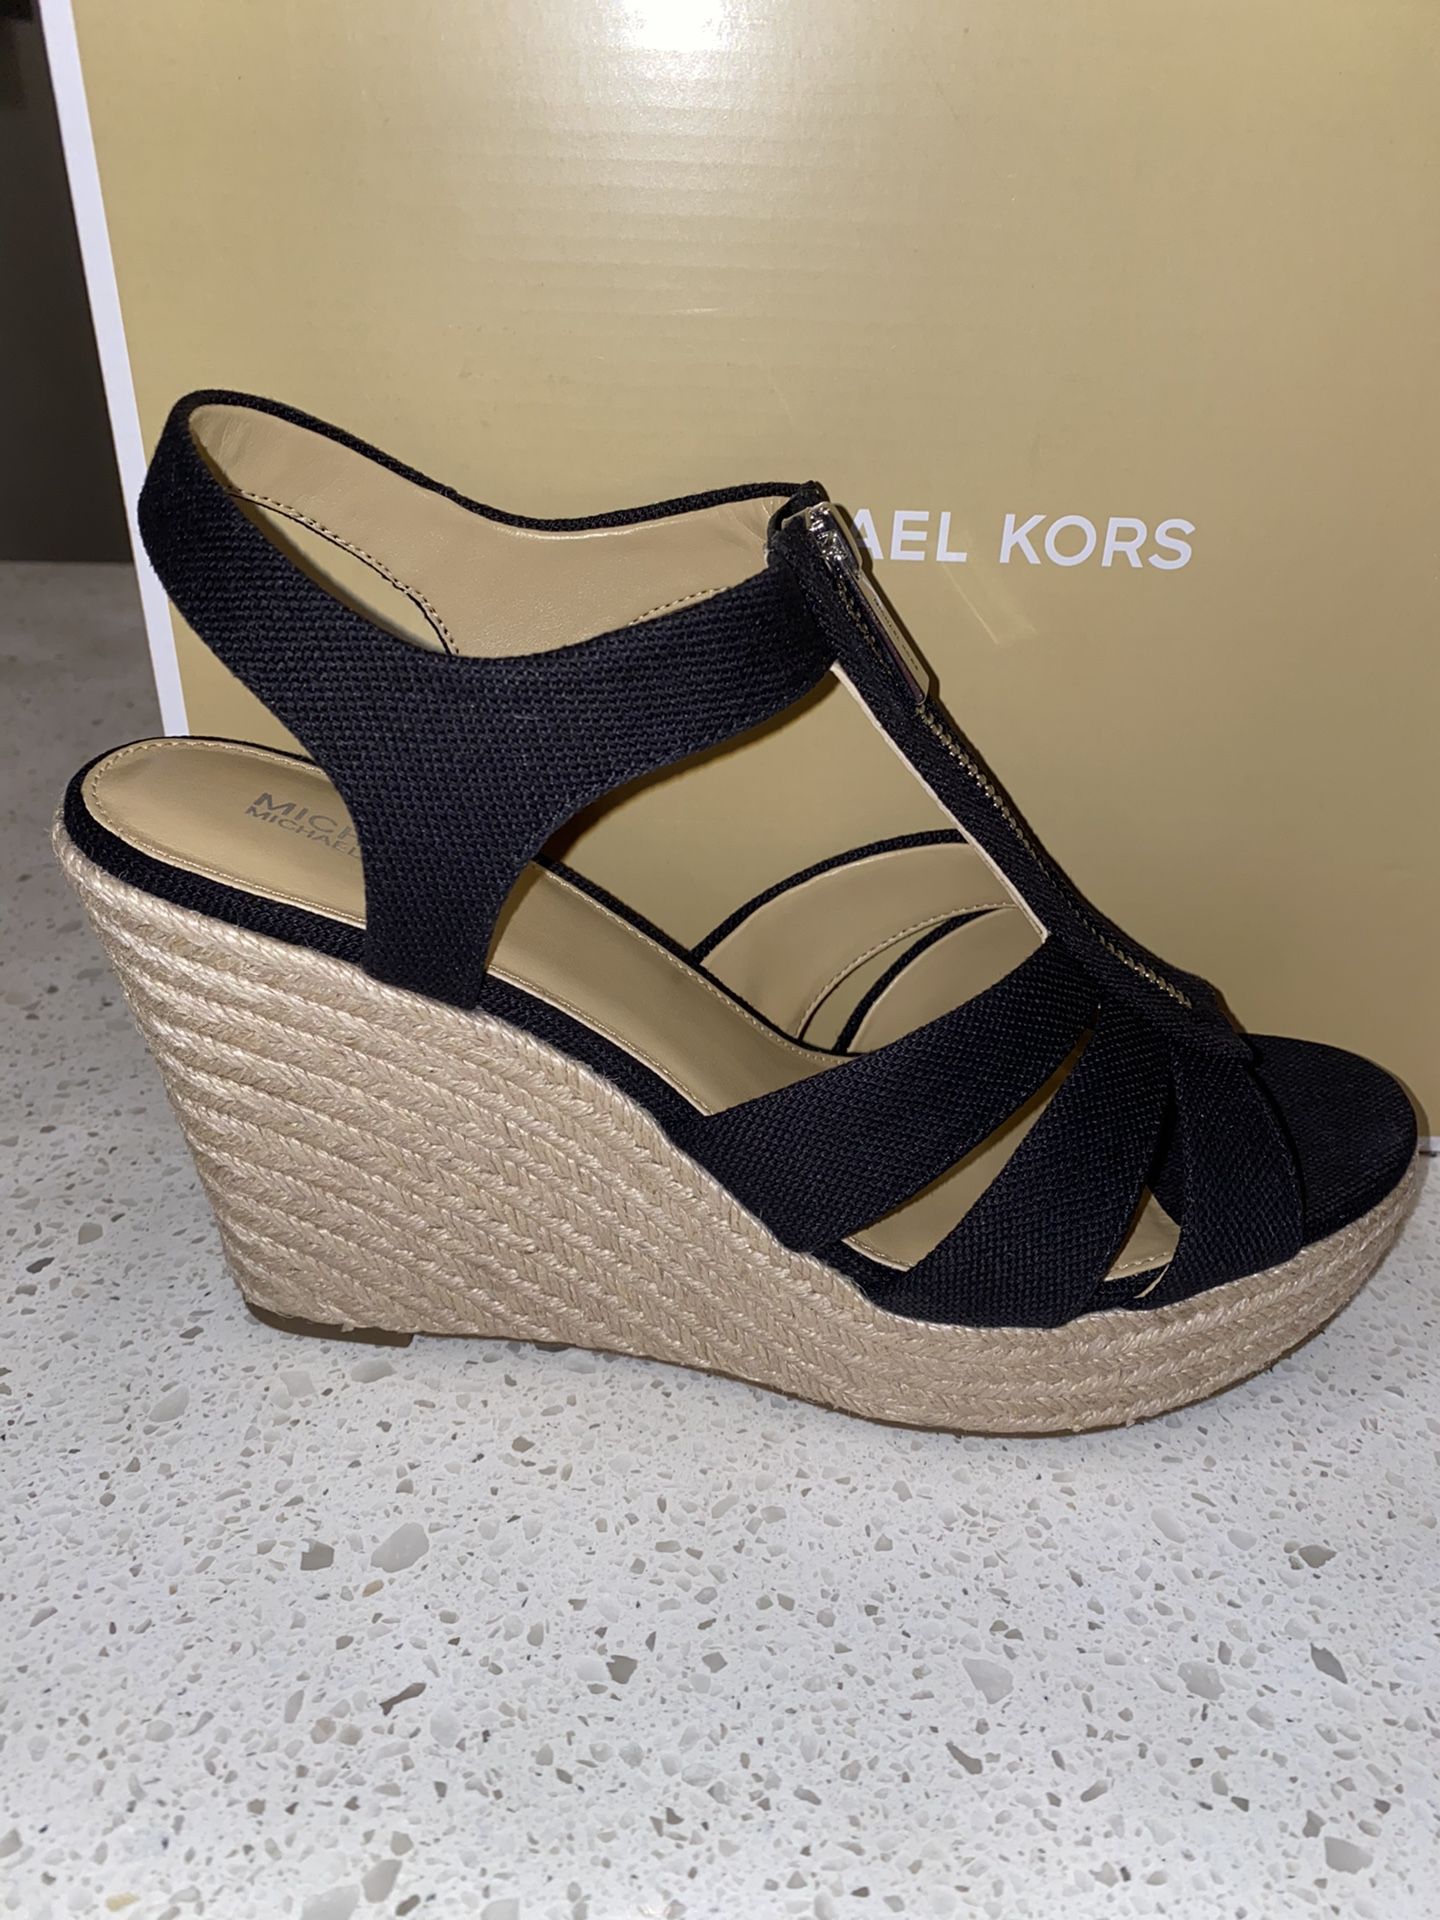 Women’s Size 10 Michael Kors Shoes